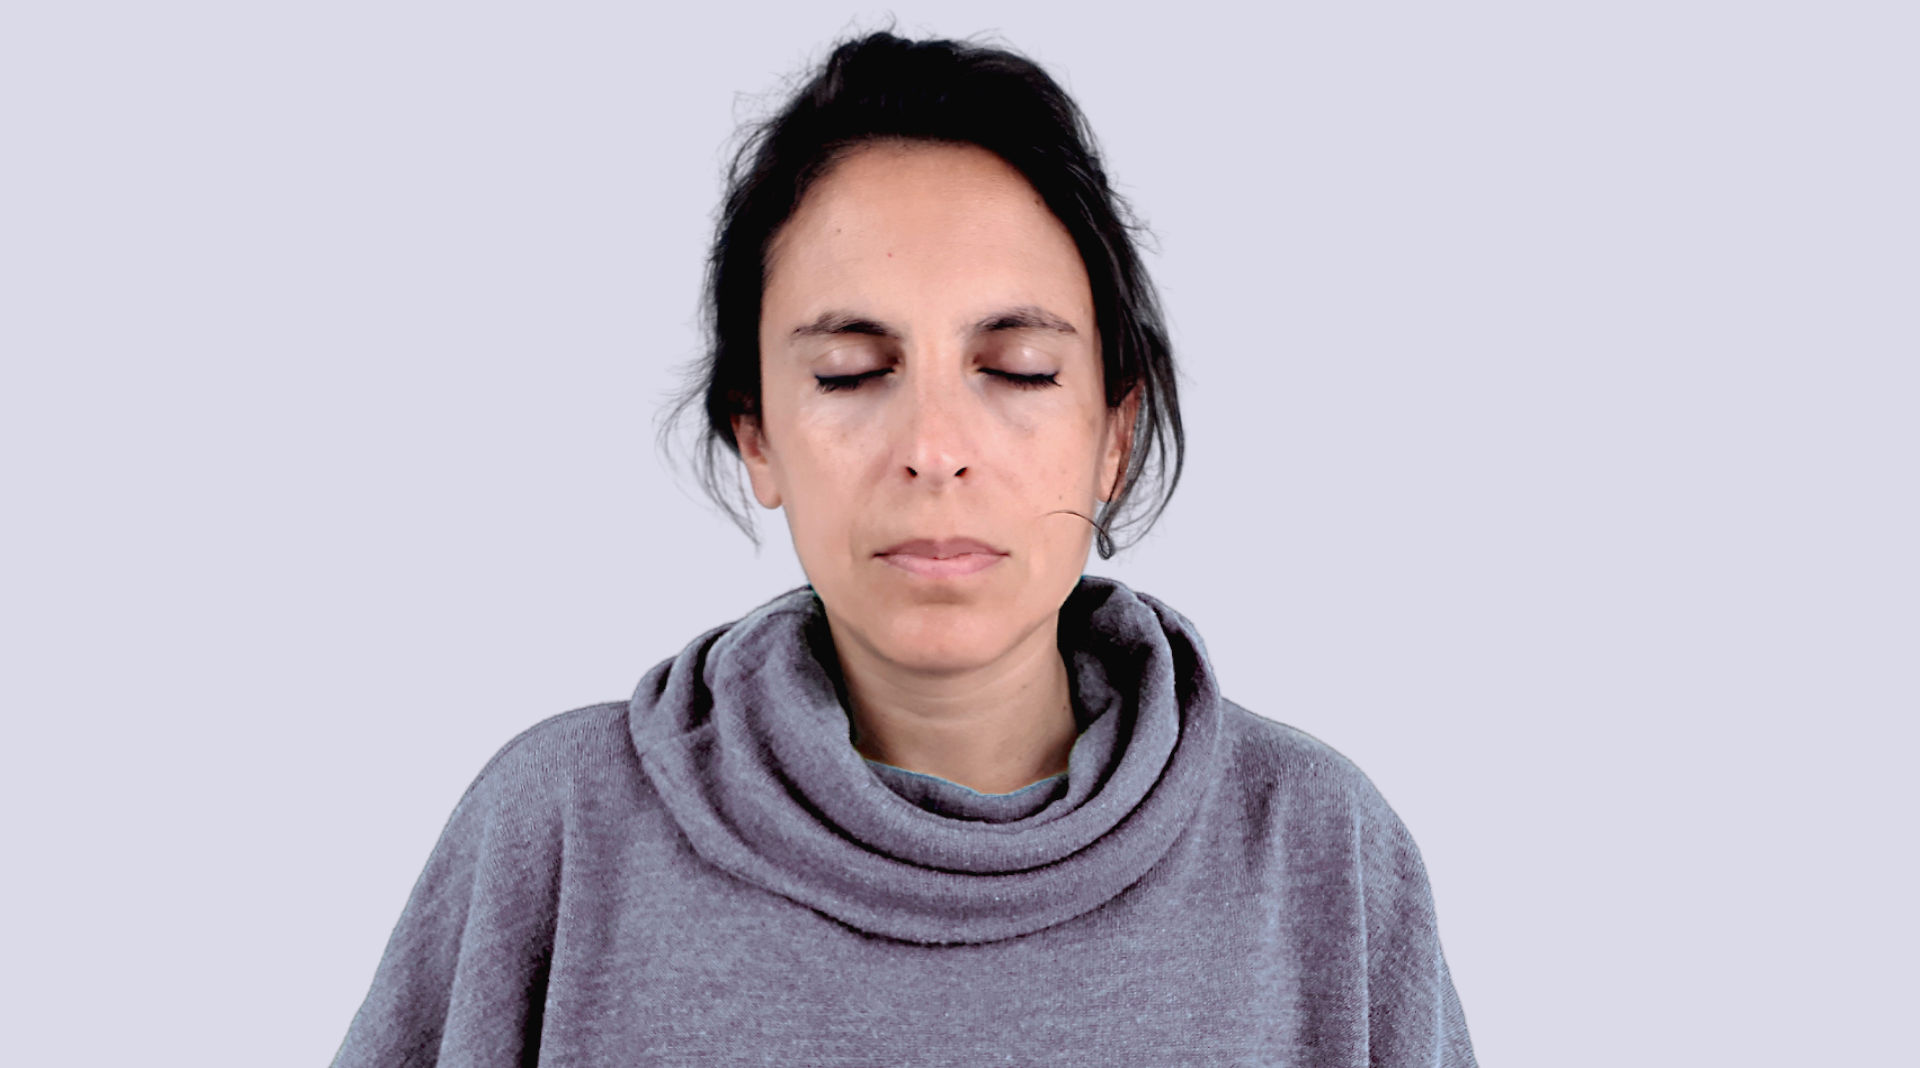 Dona amb els ulls tancats durant una pràctica de mindfulness